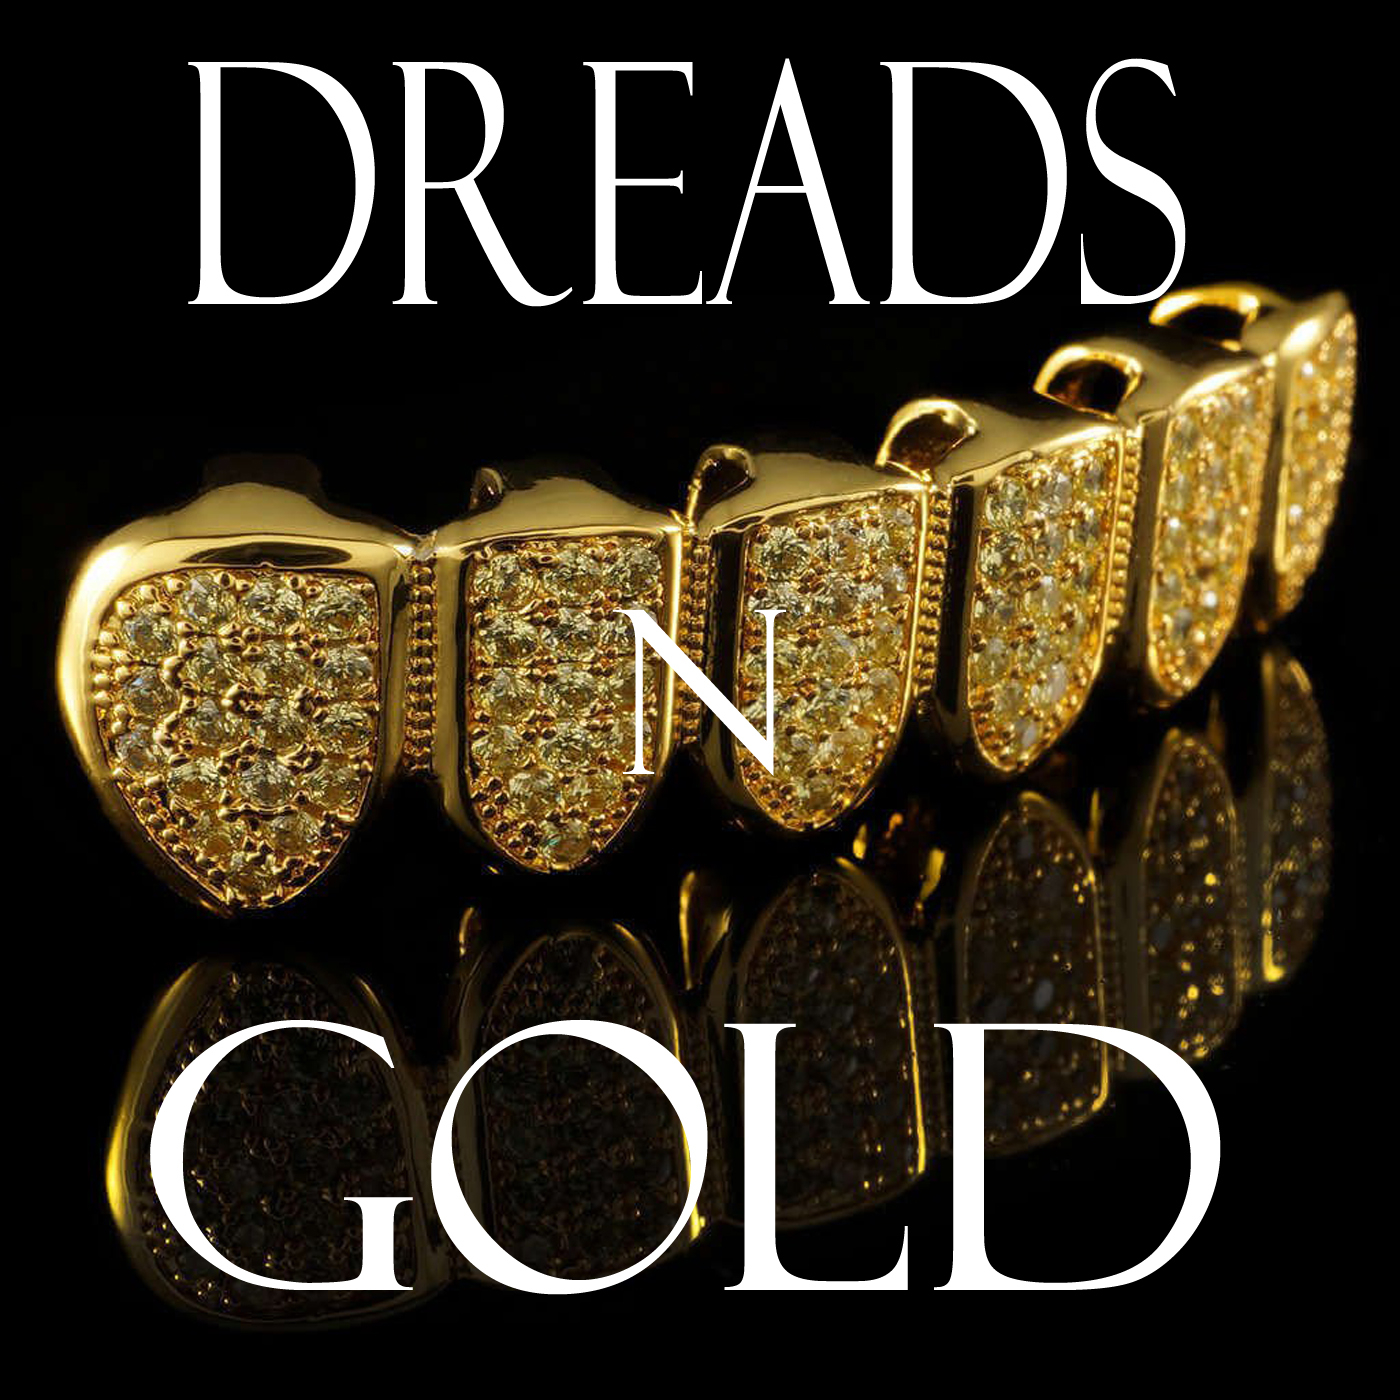 Dreads N Gold